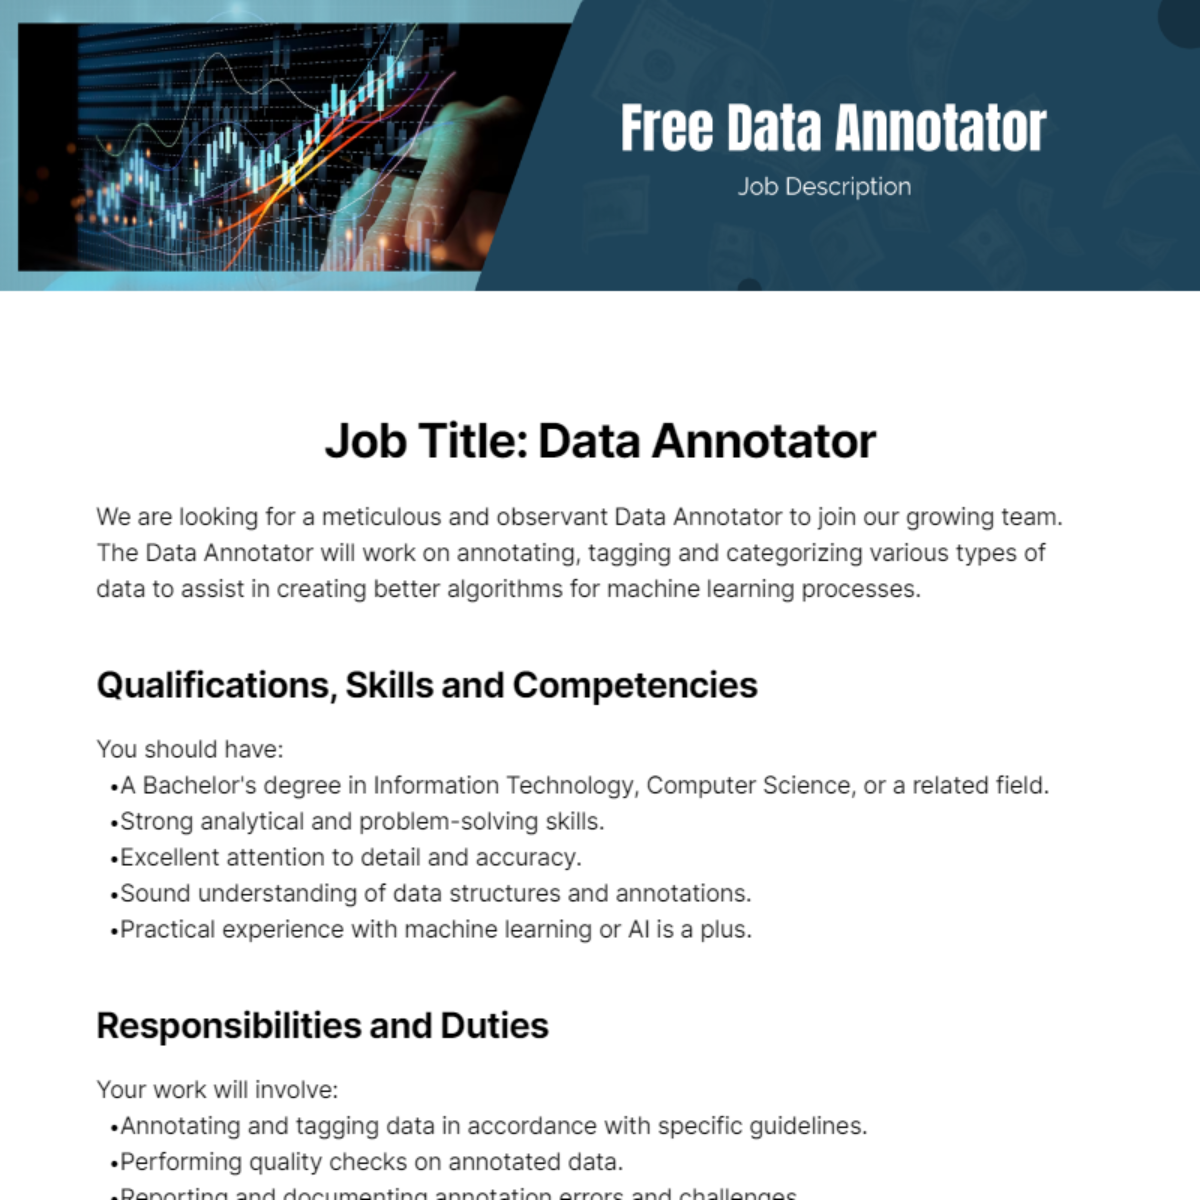 Free Data Annotator Job Description Template